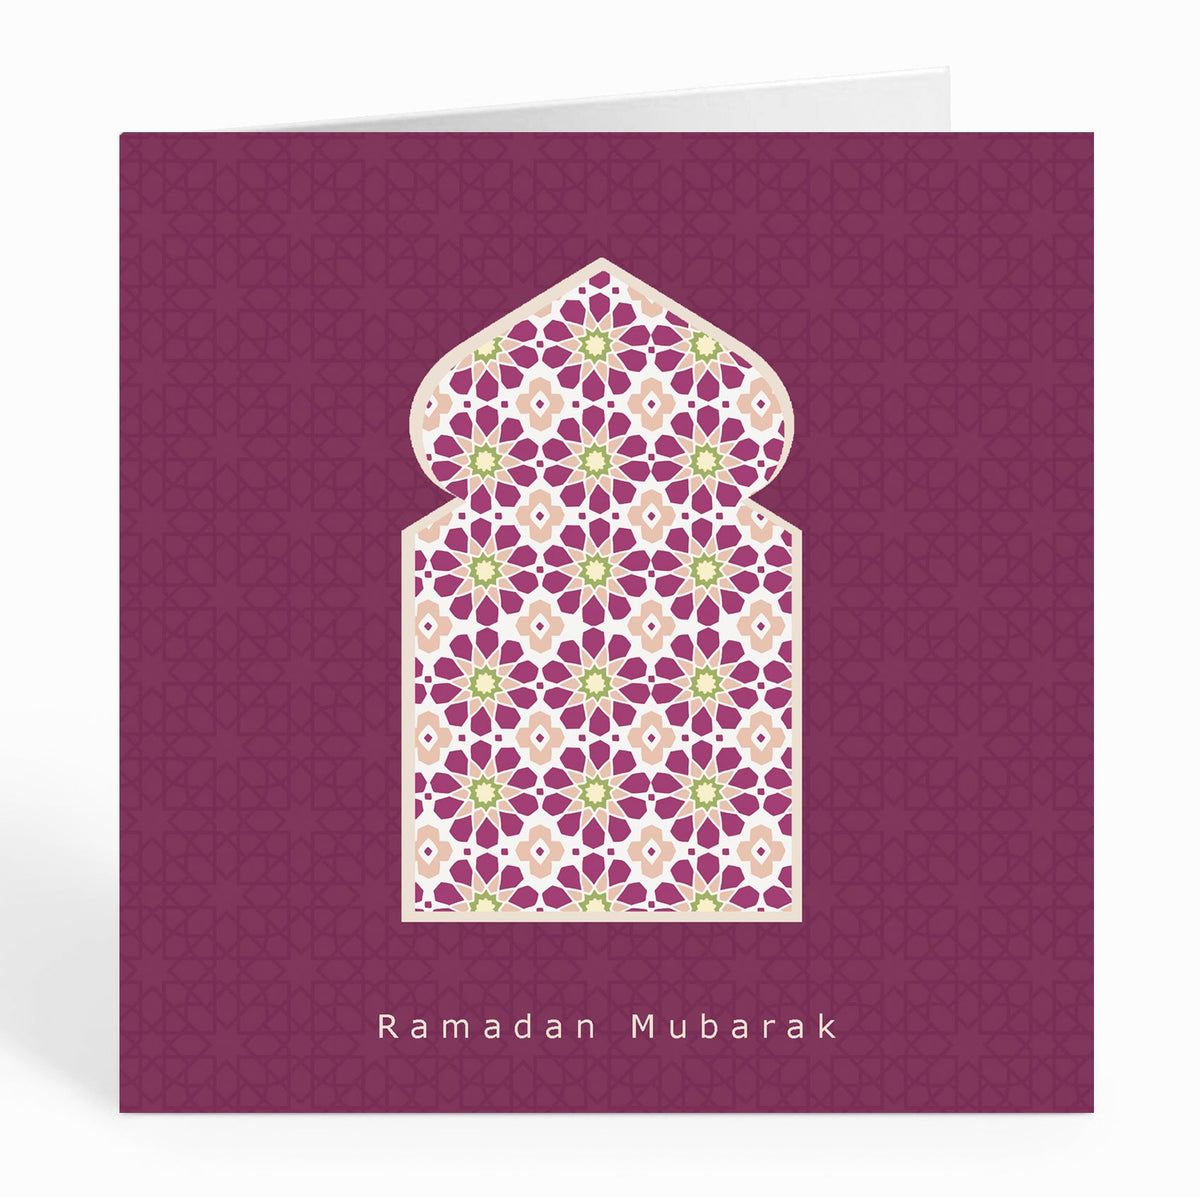 Ramadan Mubarak - Arabian Arch over Burgundy Geometric